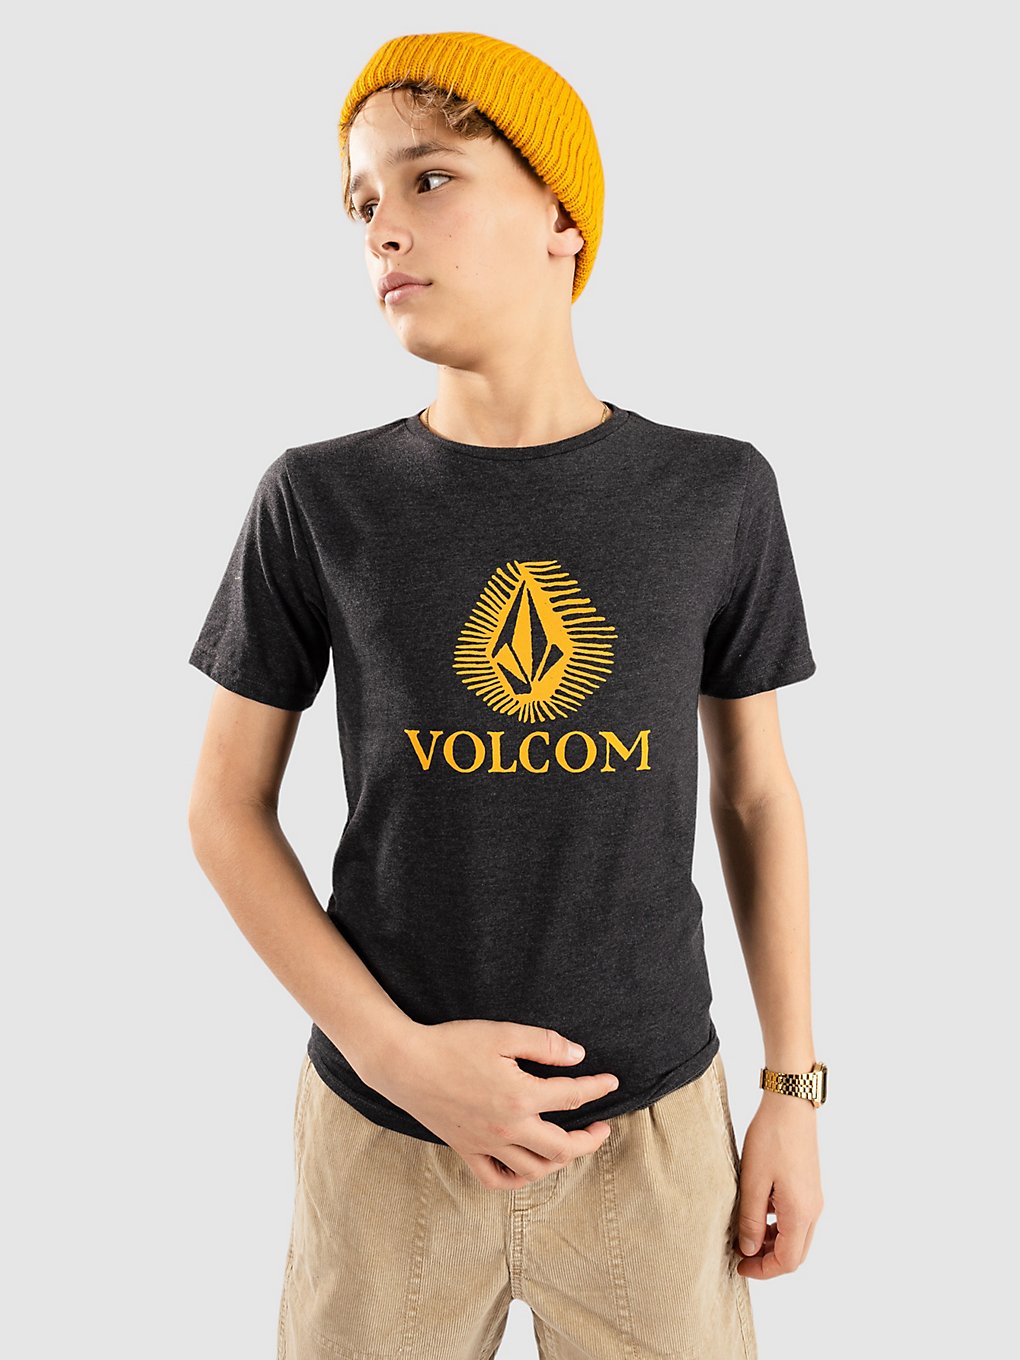 Volcom Offshore Stone T-Shirt dark black heather kaufen